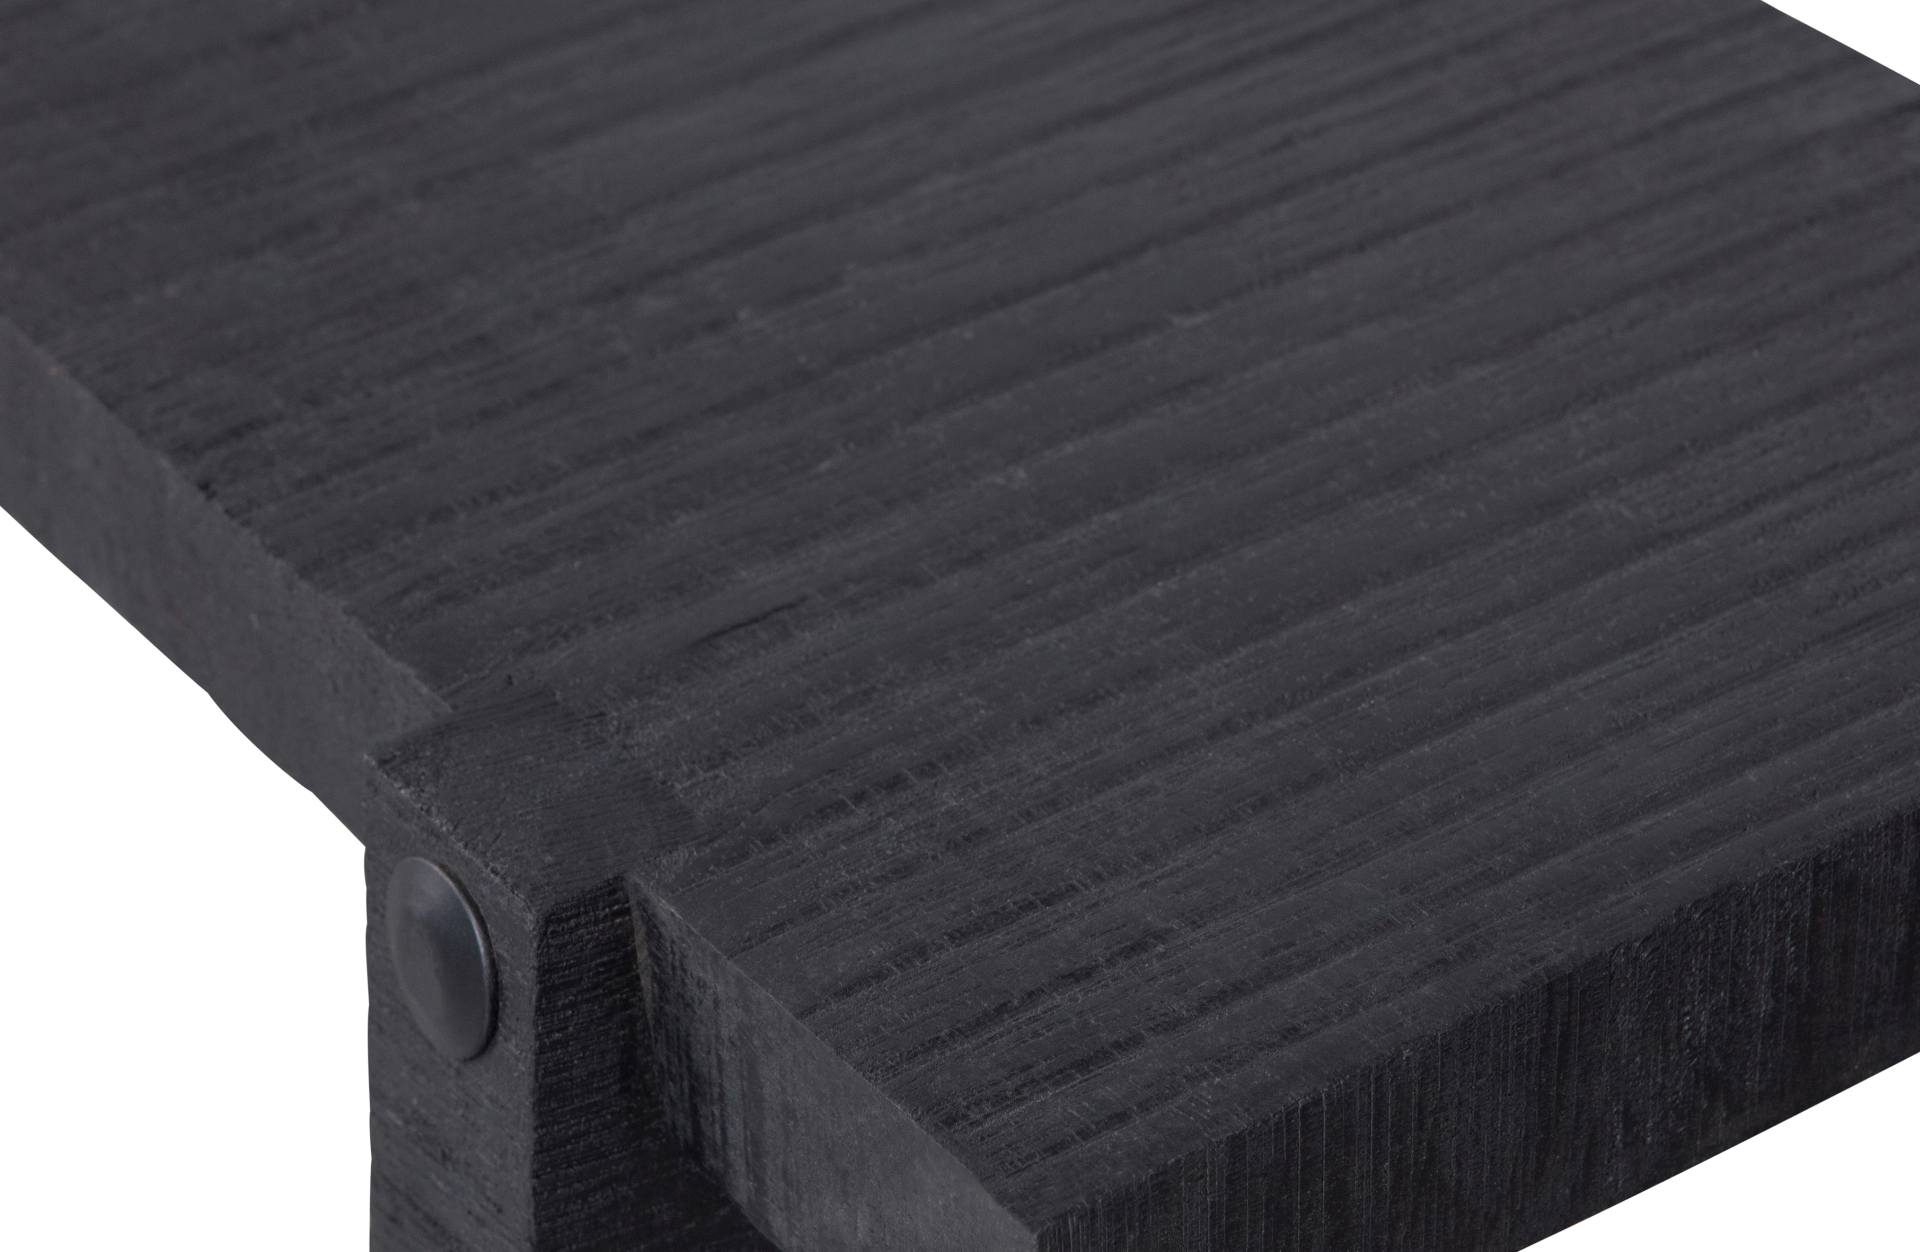 Der Beistelltisch Luis wurde aus Mangoholz gefertigt, welches einen schwarzen Farbton besitzt. Der Tisch überzeugt mit seinem modernen Design.